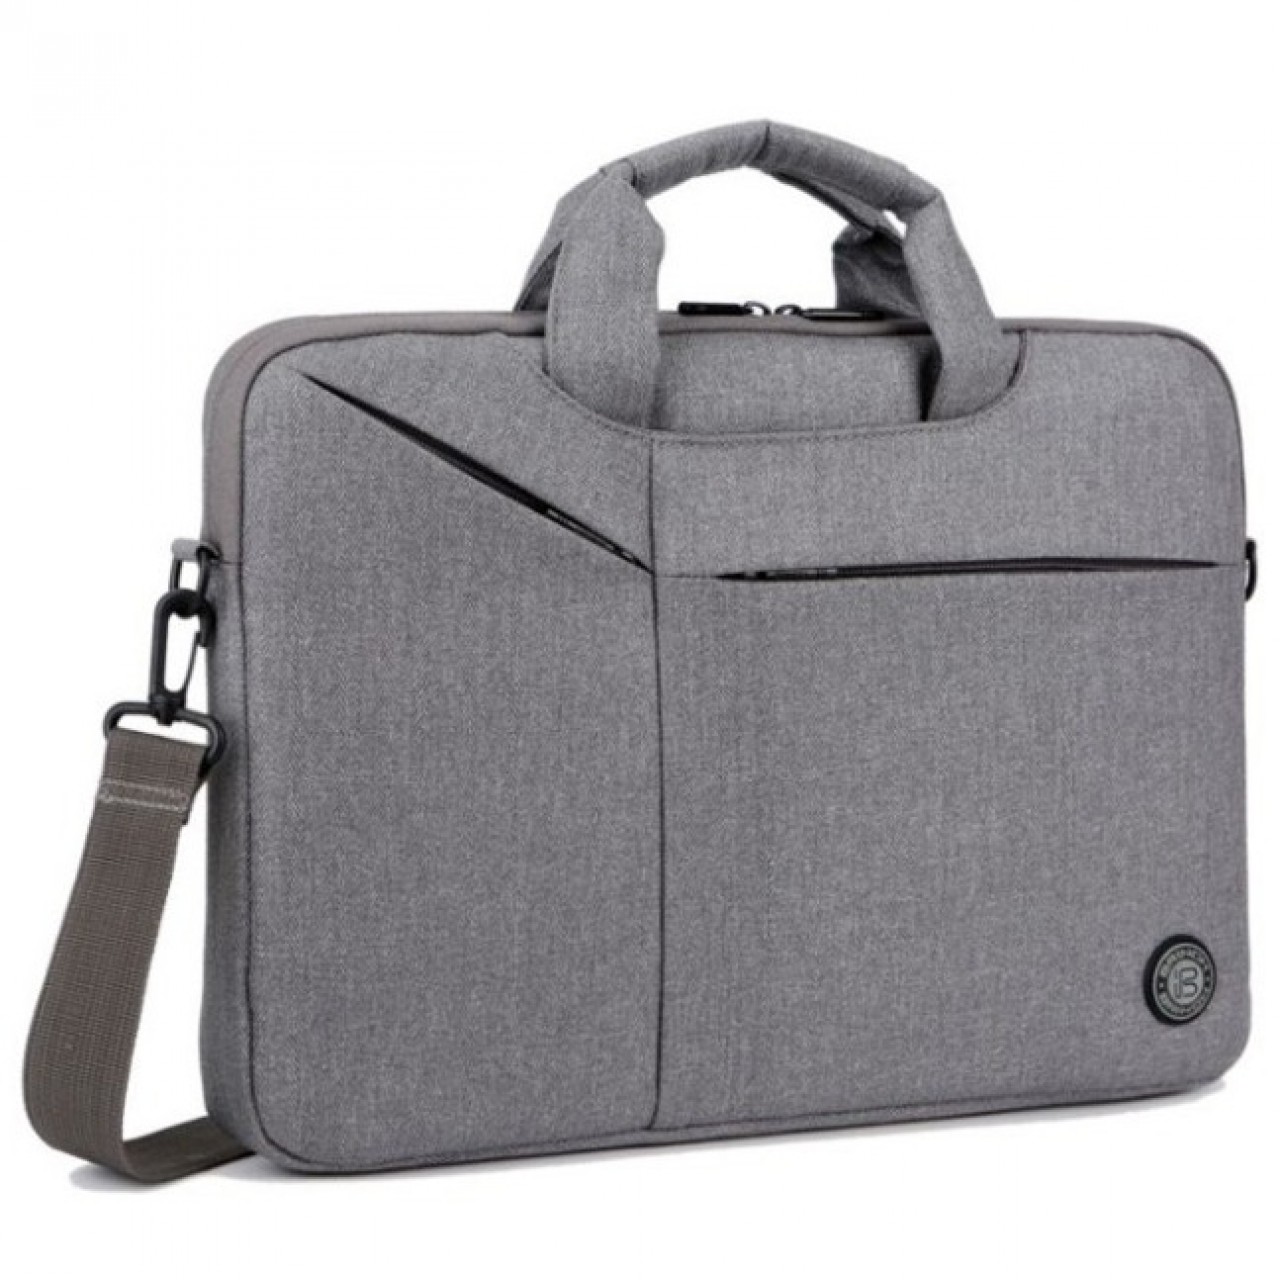 Brinch BW-235 Laptop Bag 15.6 Inch - Grey